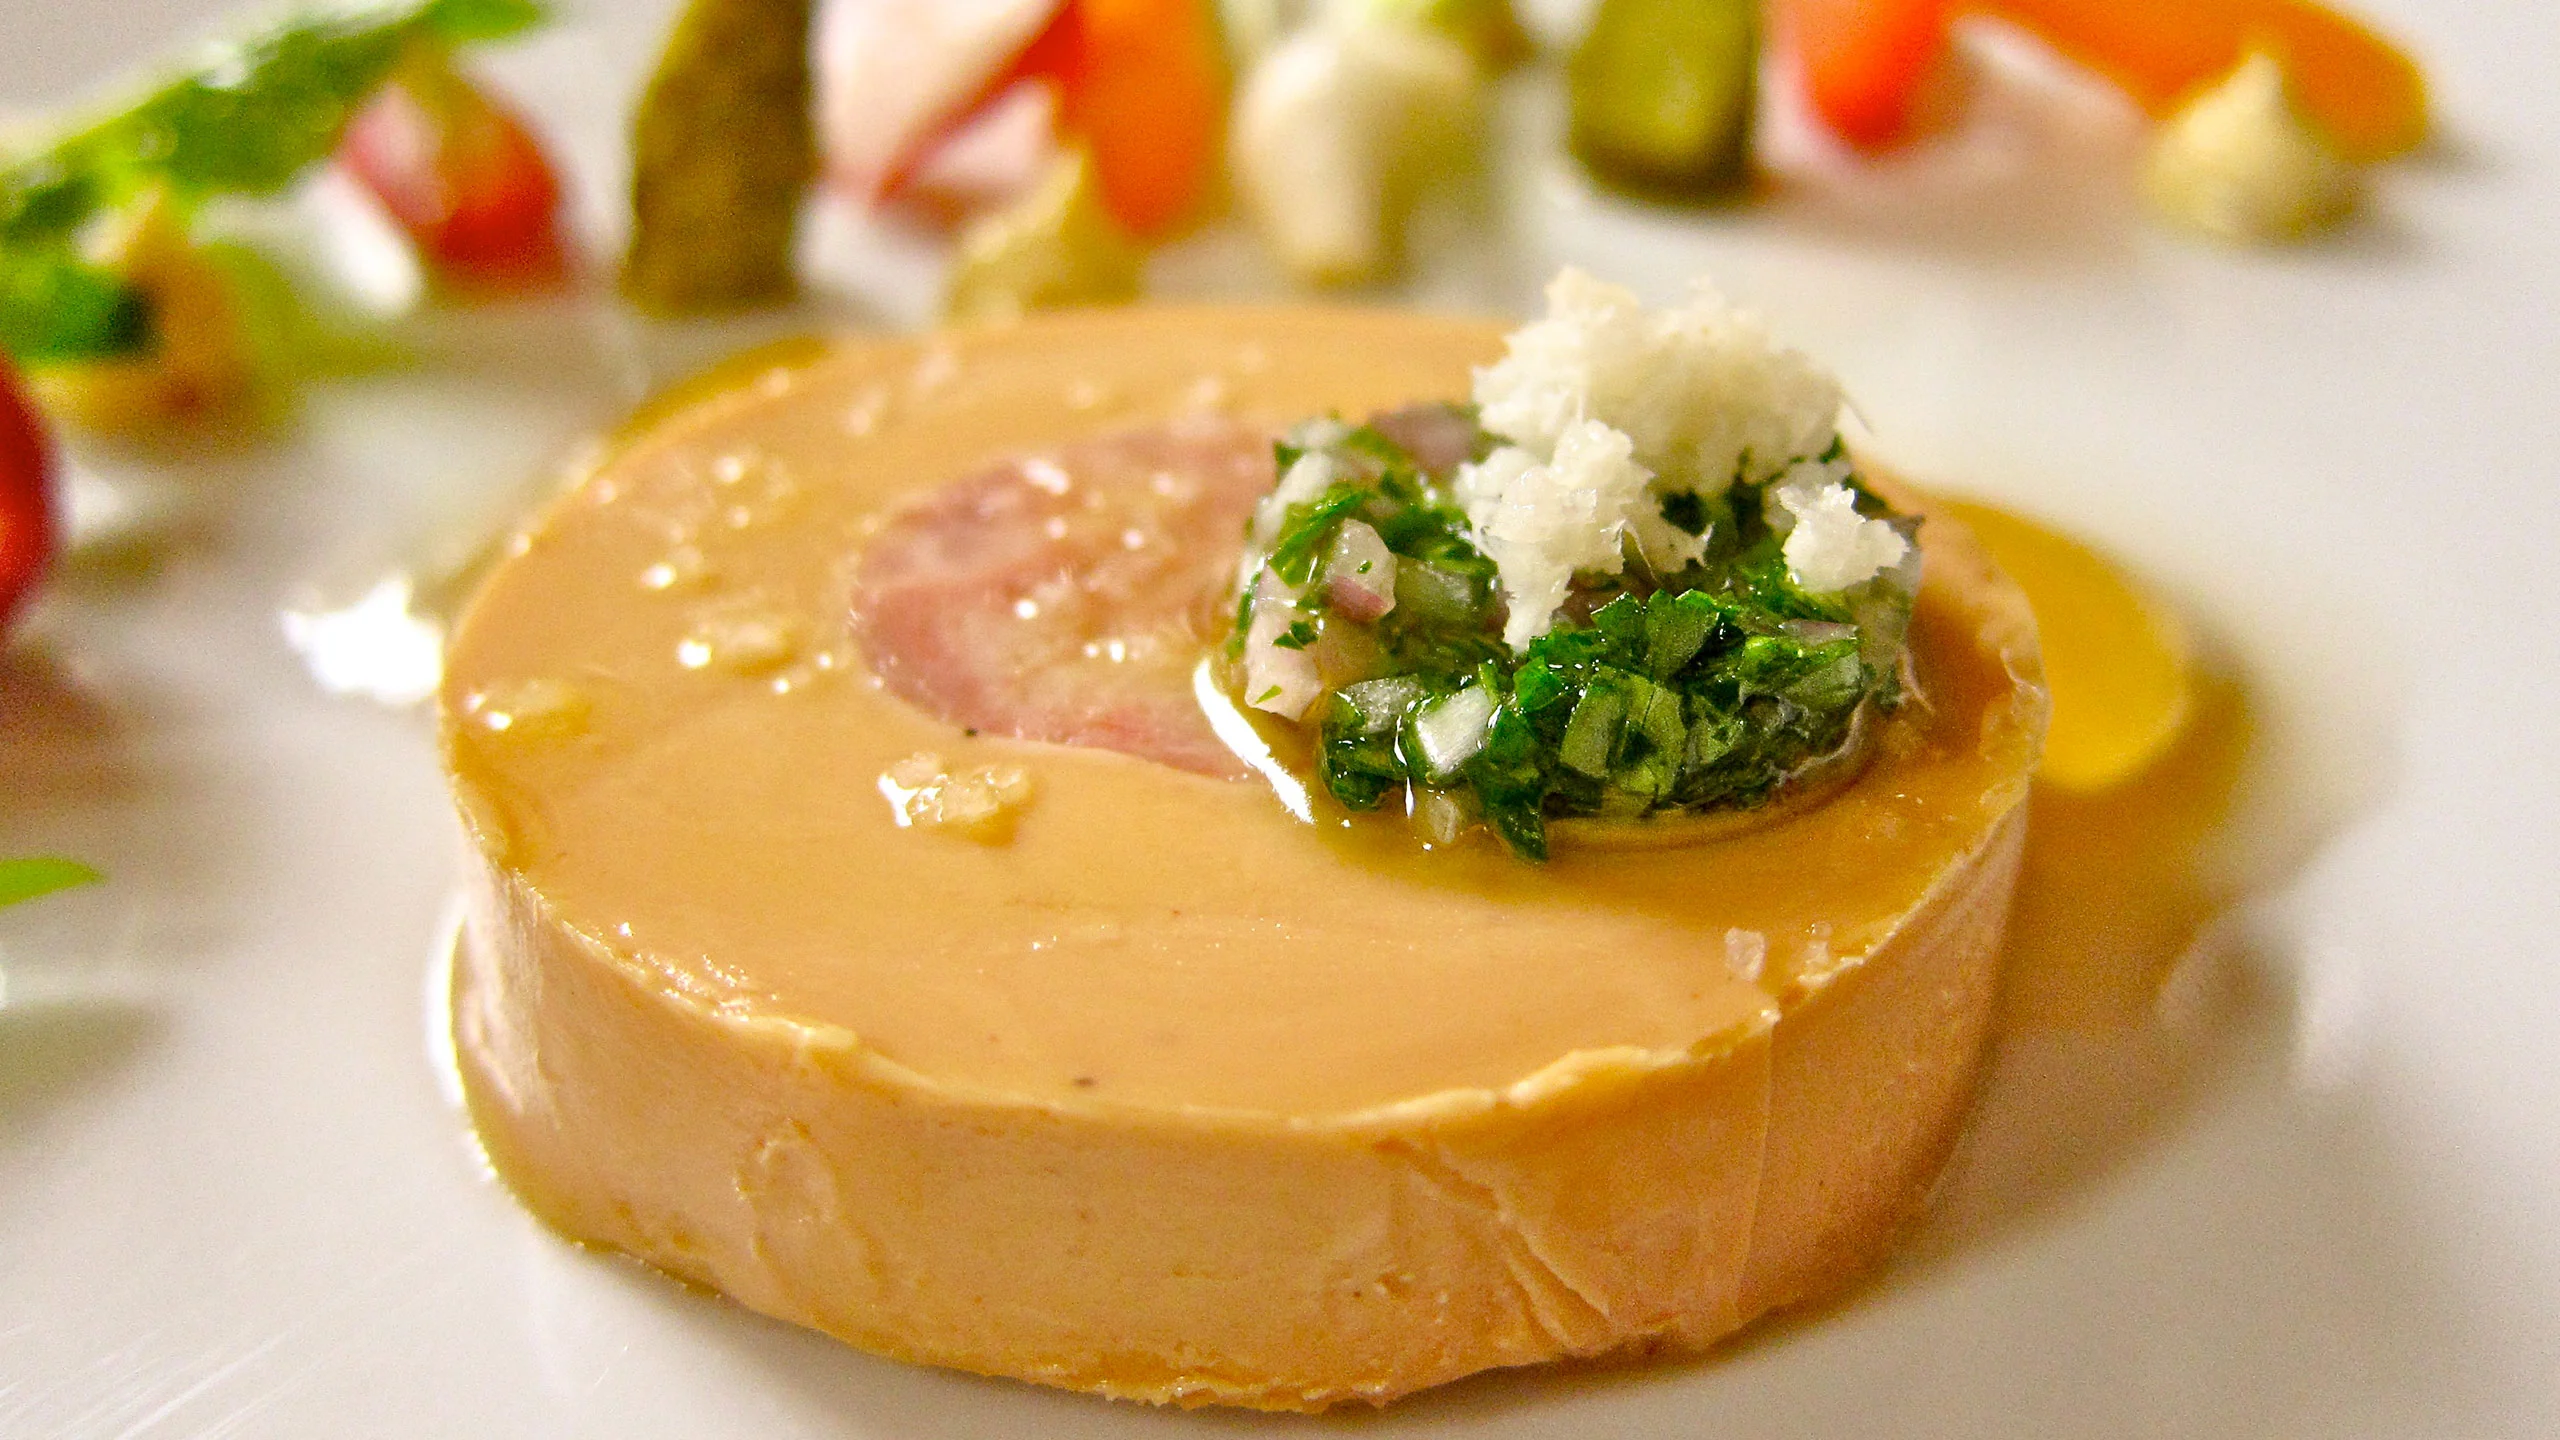 Lanzan foie gras cultivado para disfrutar sin culpa